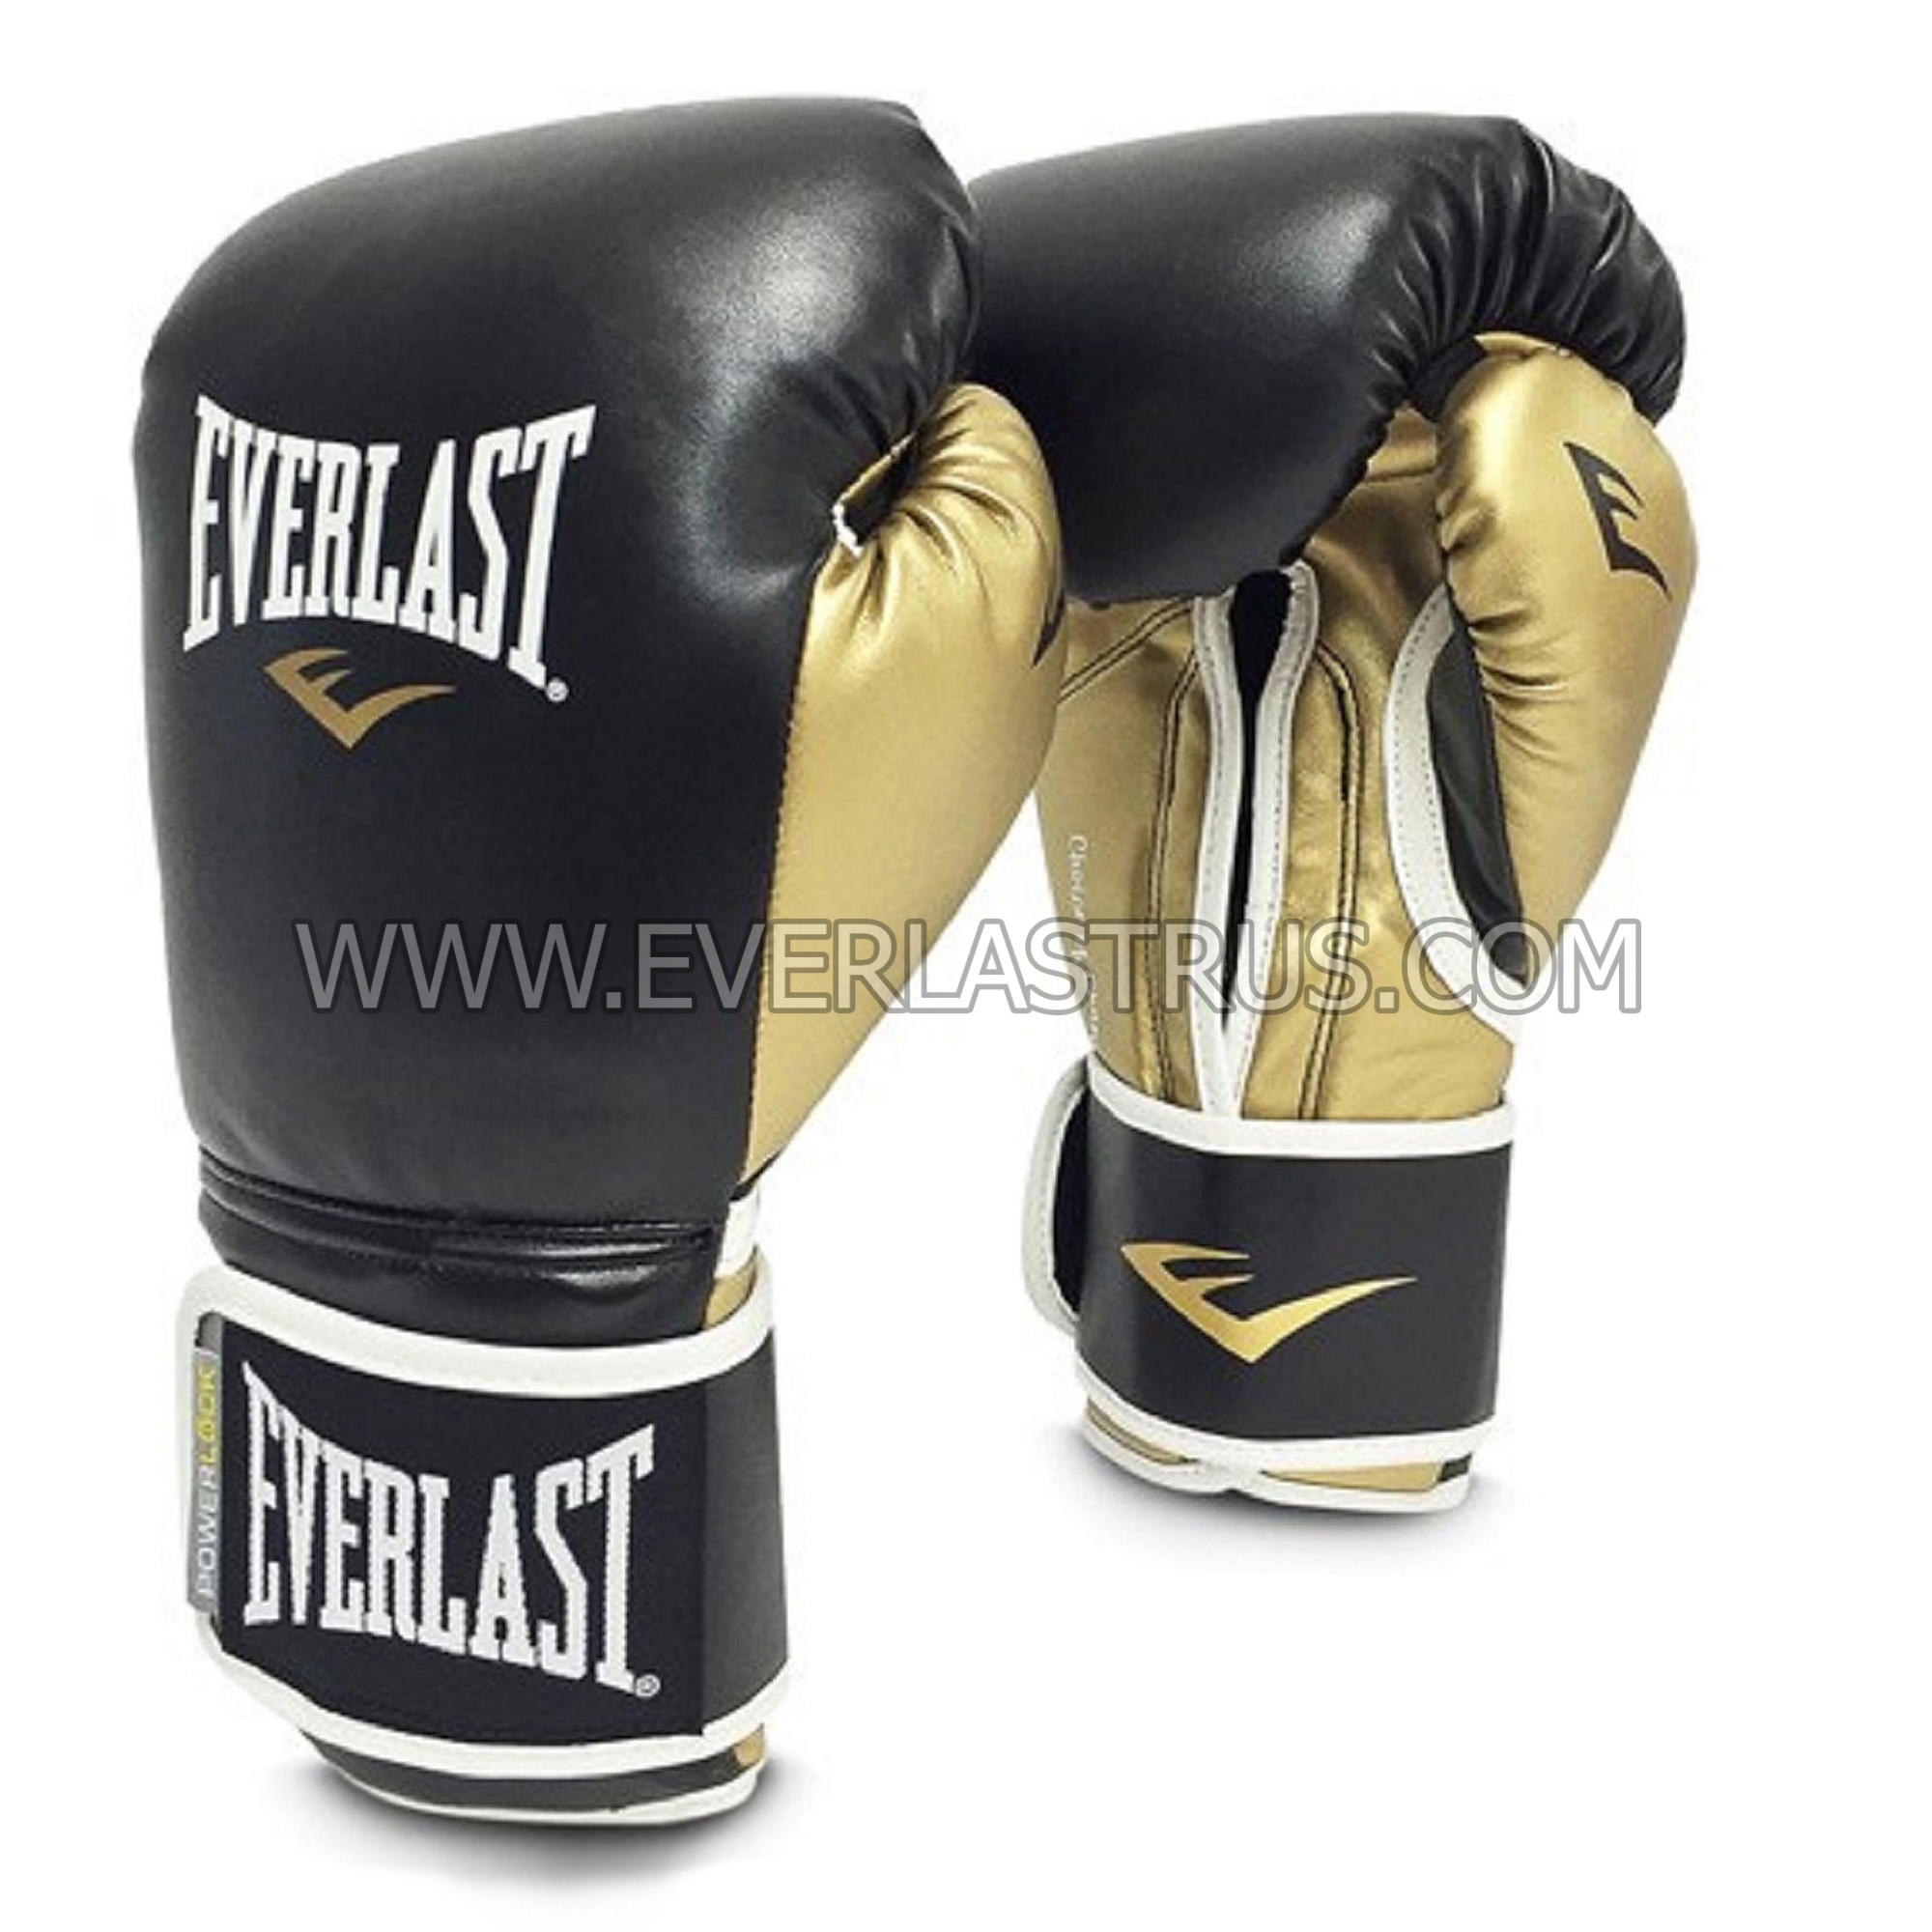 Фото 3: Перчатки боксерские Everlast Powerlock PU P00000722 кожзаменитель